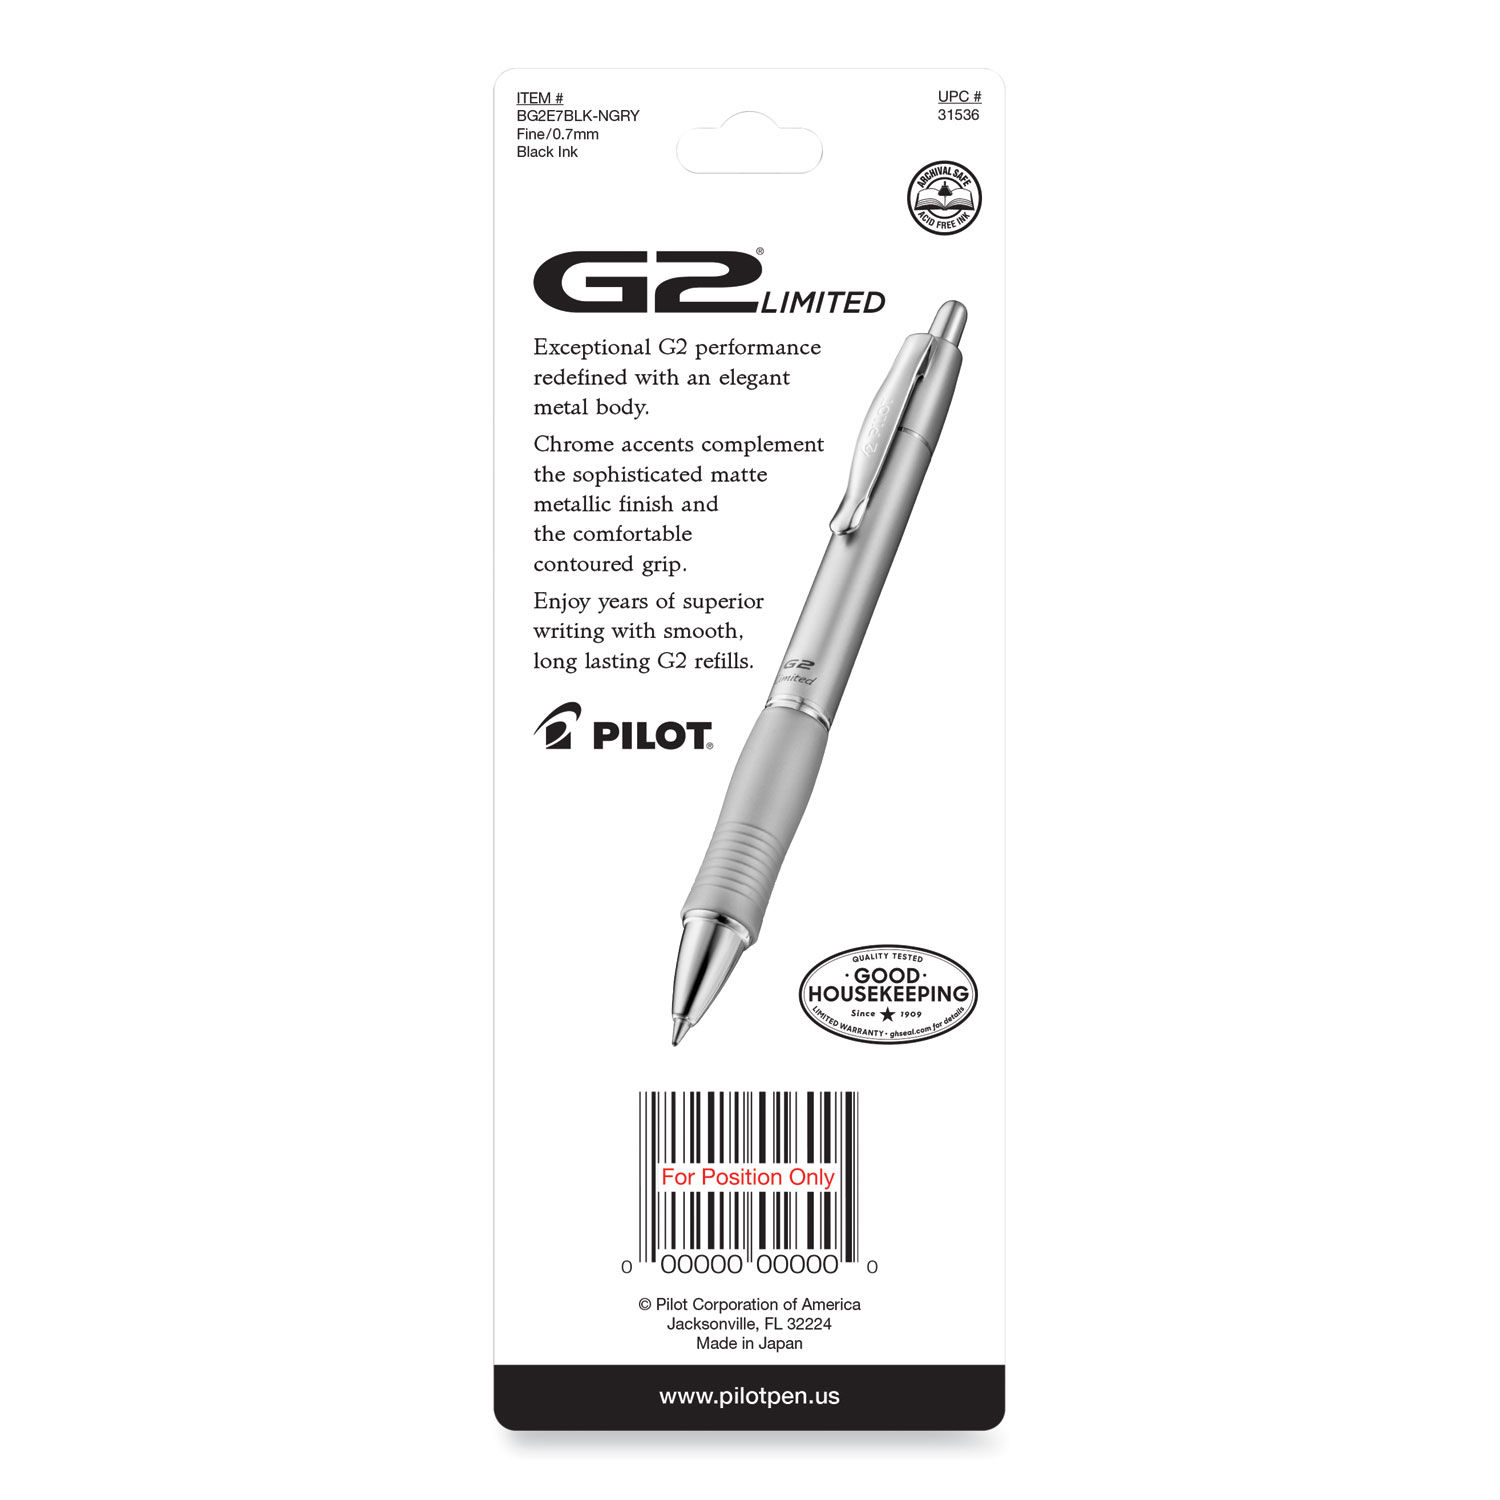 G2 Limited Gel Pen by Pilot® PIL31536